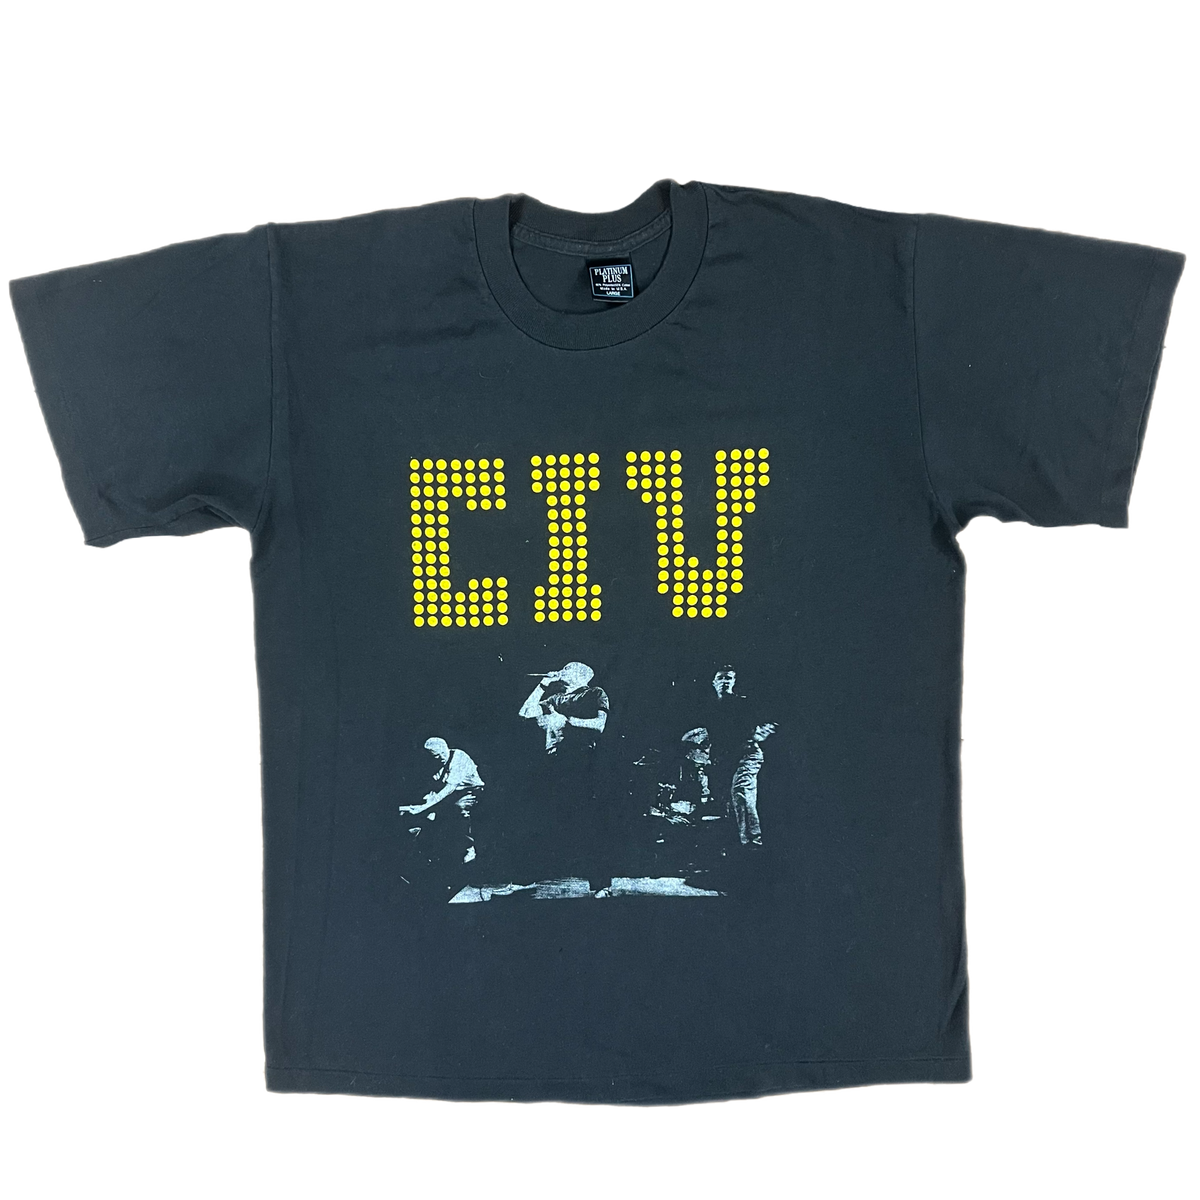 Vintage CIV T-Shirt